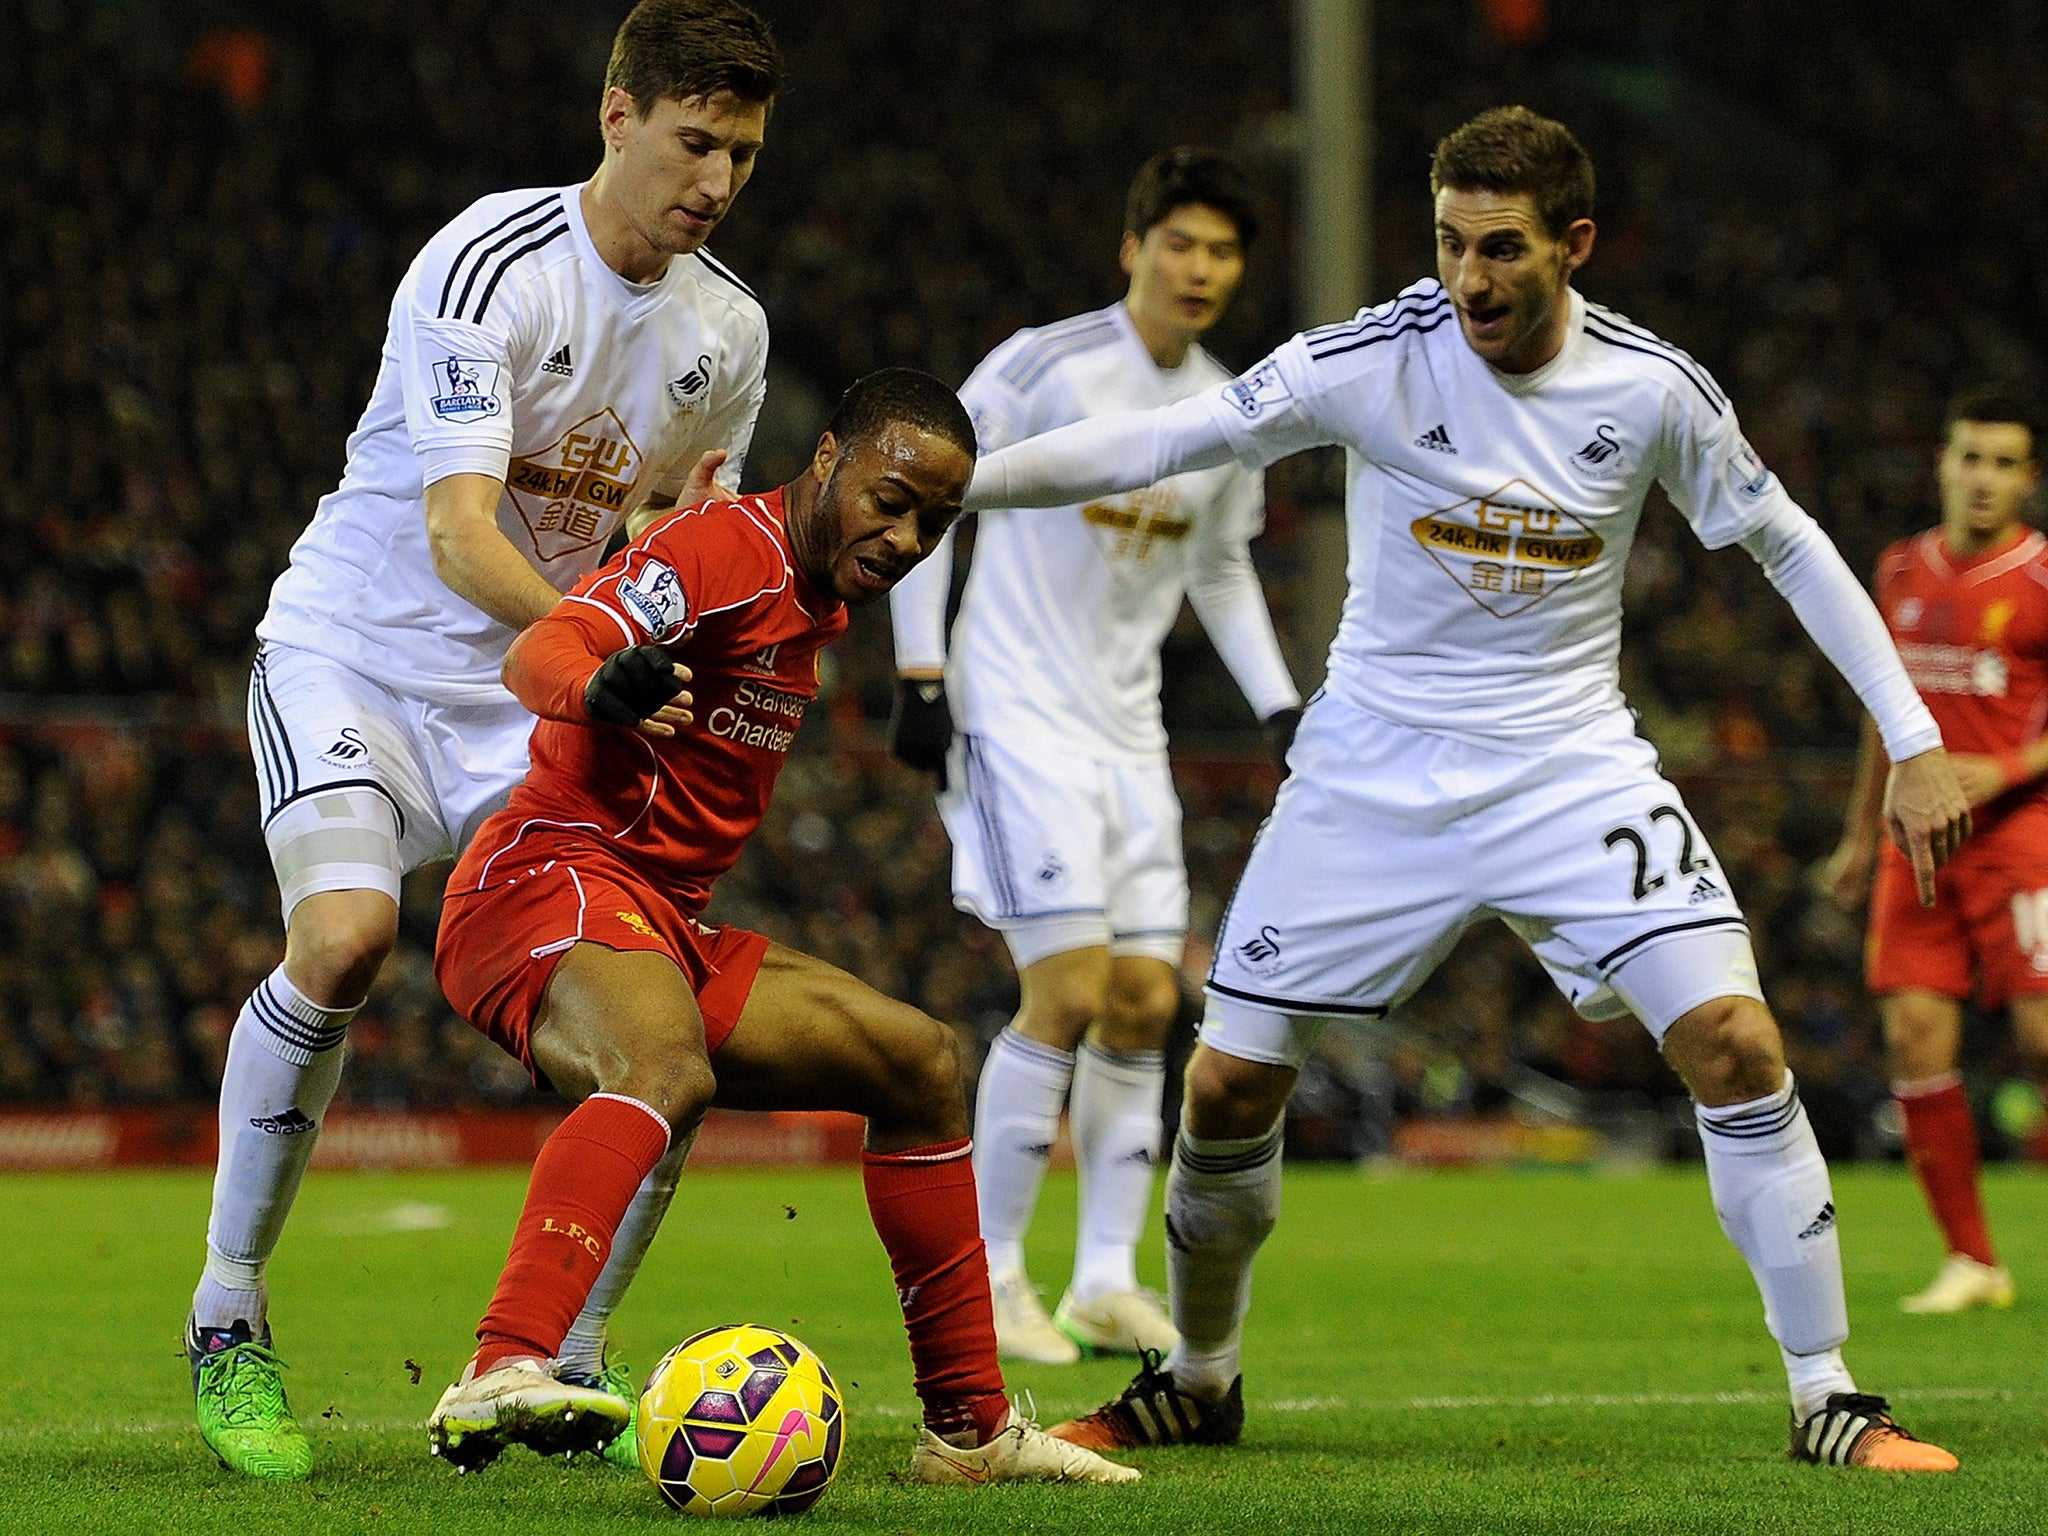 Liverpool forward Raheem Sterling in action against Swansea